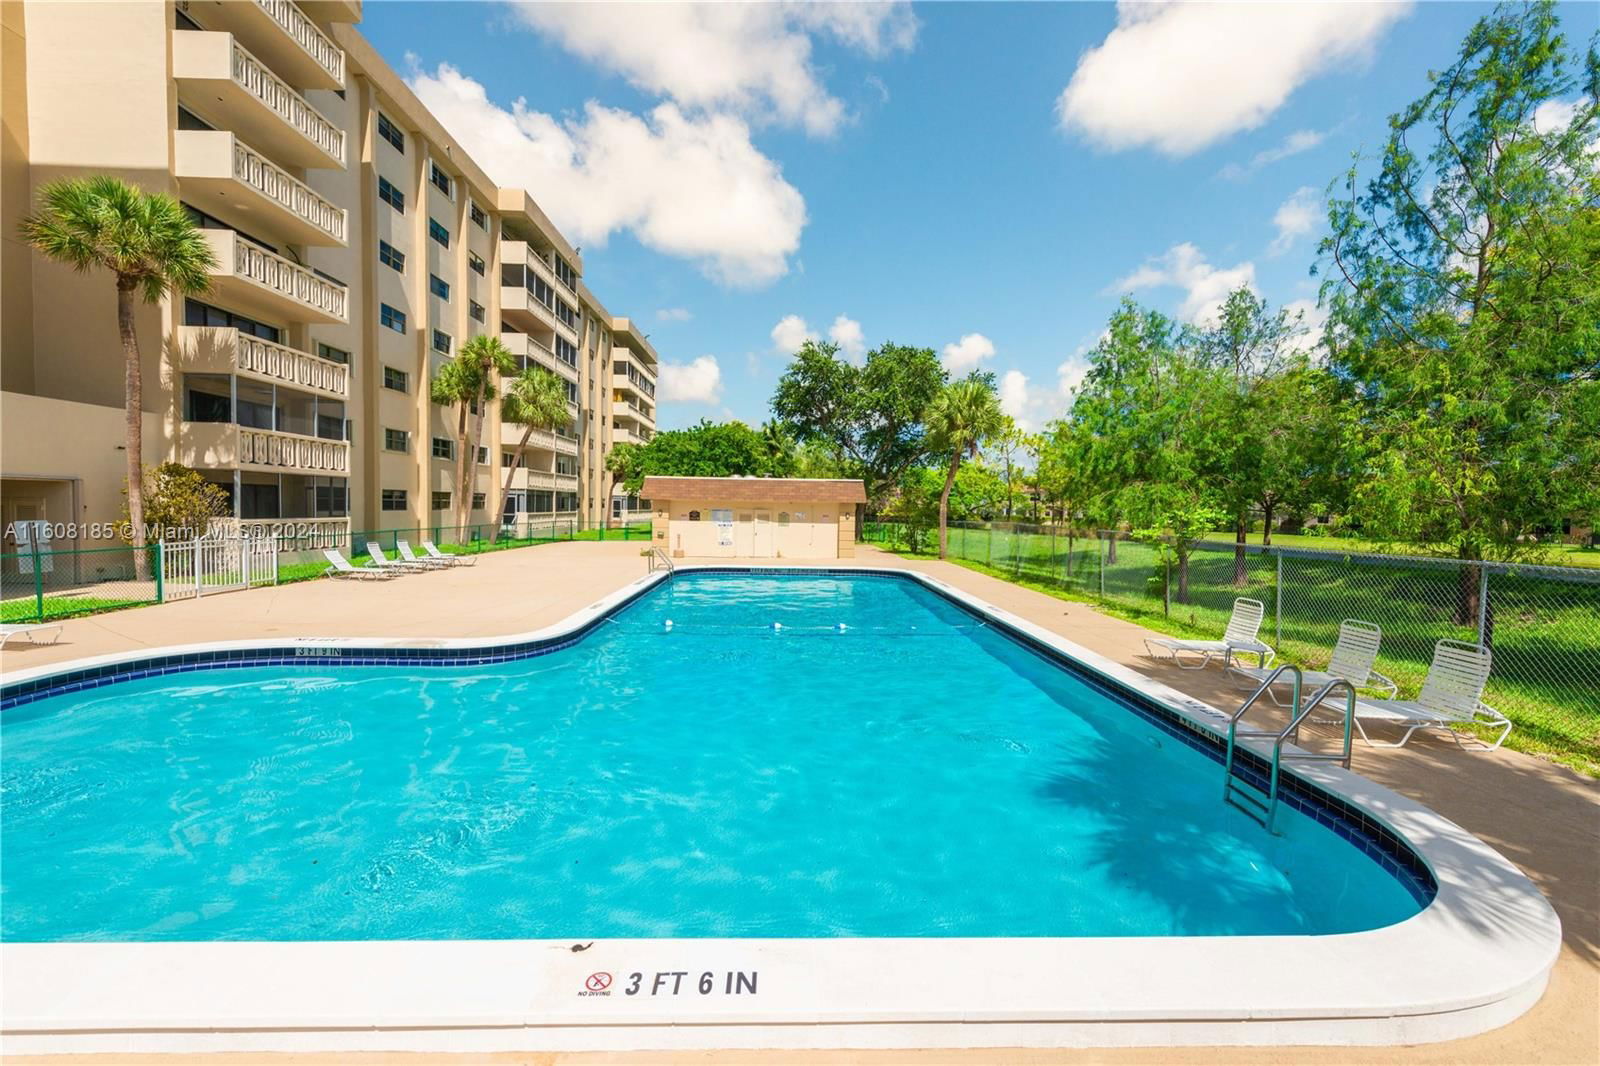 Real estate property located at 800 195th St #206, Miami-Dade County, CANONGATE CONDO NO ONE, Miami, FL